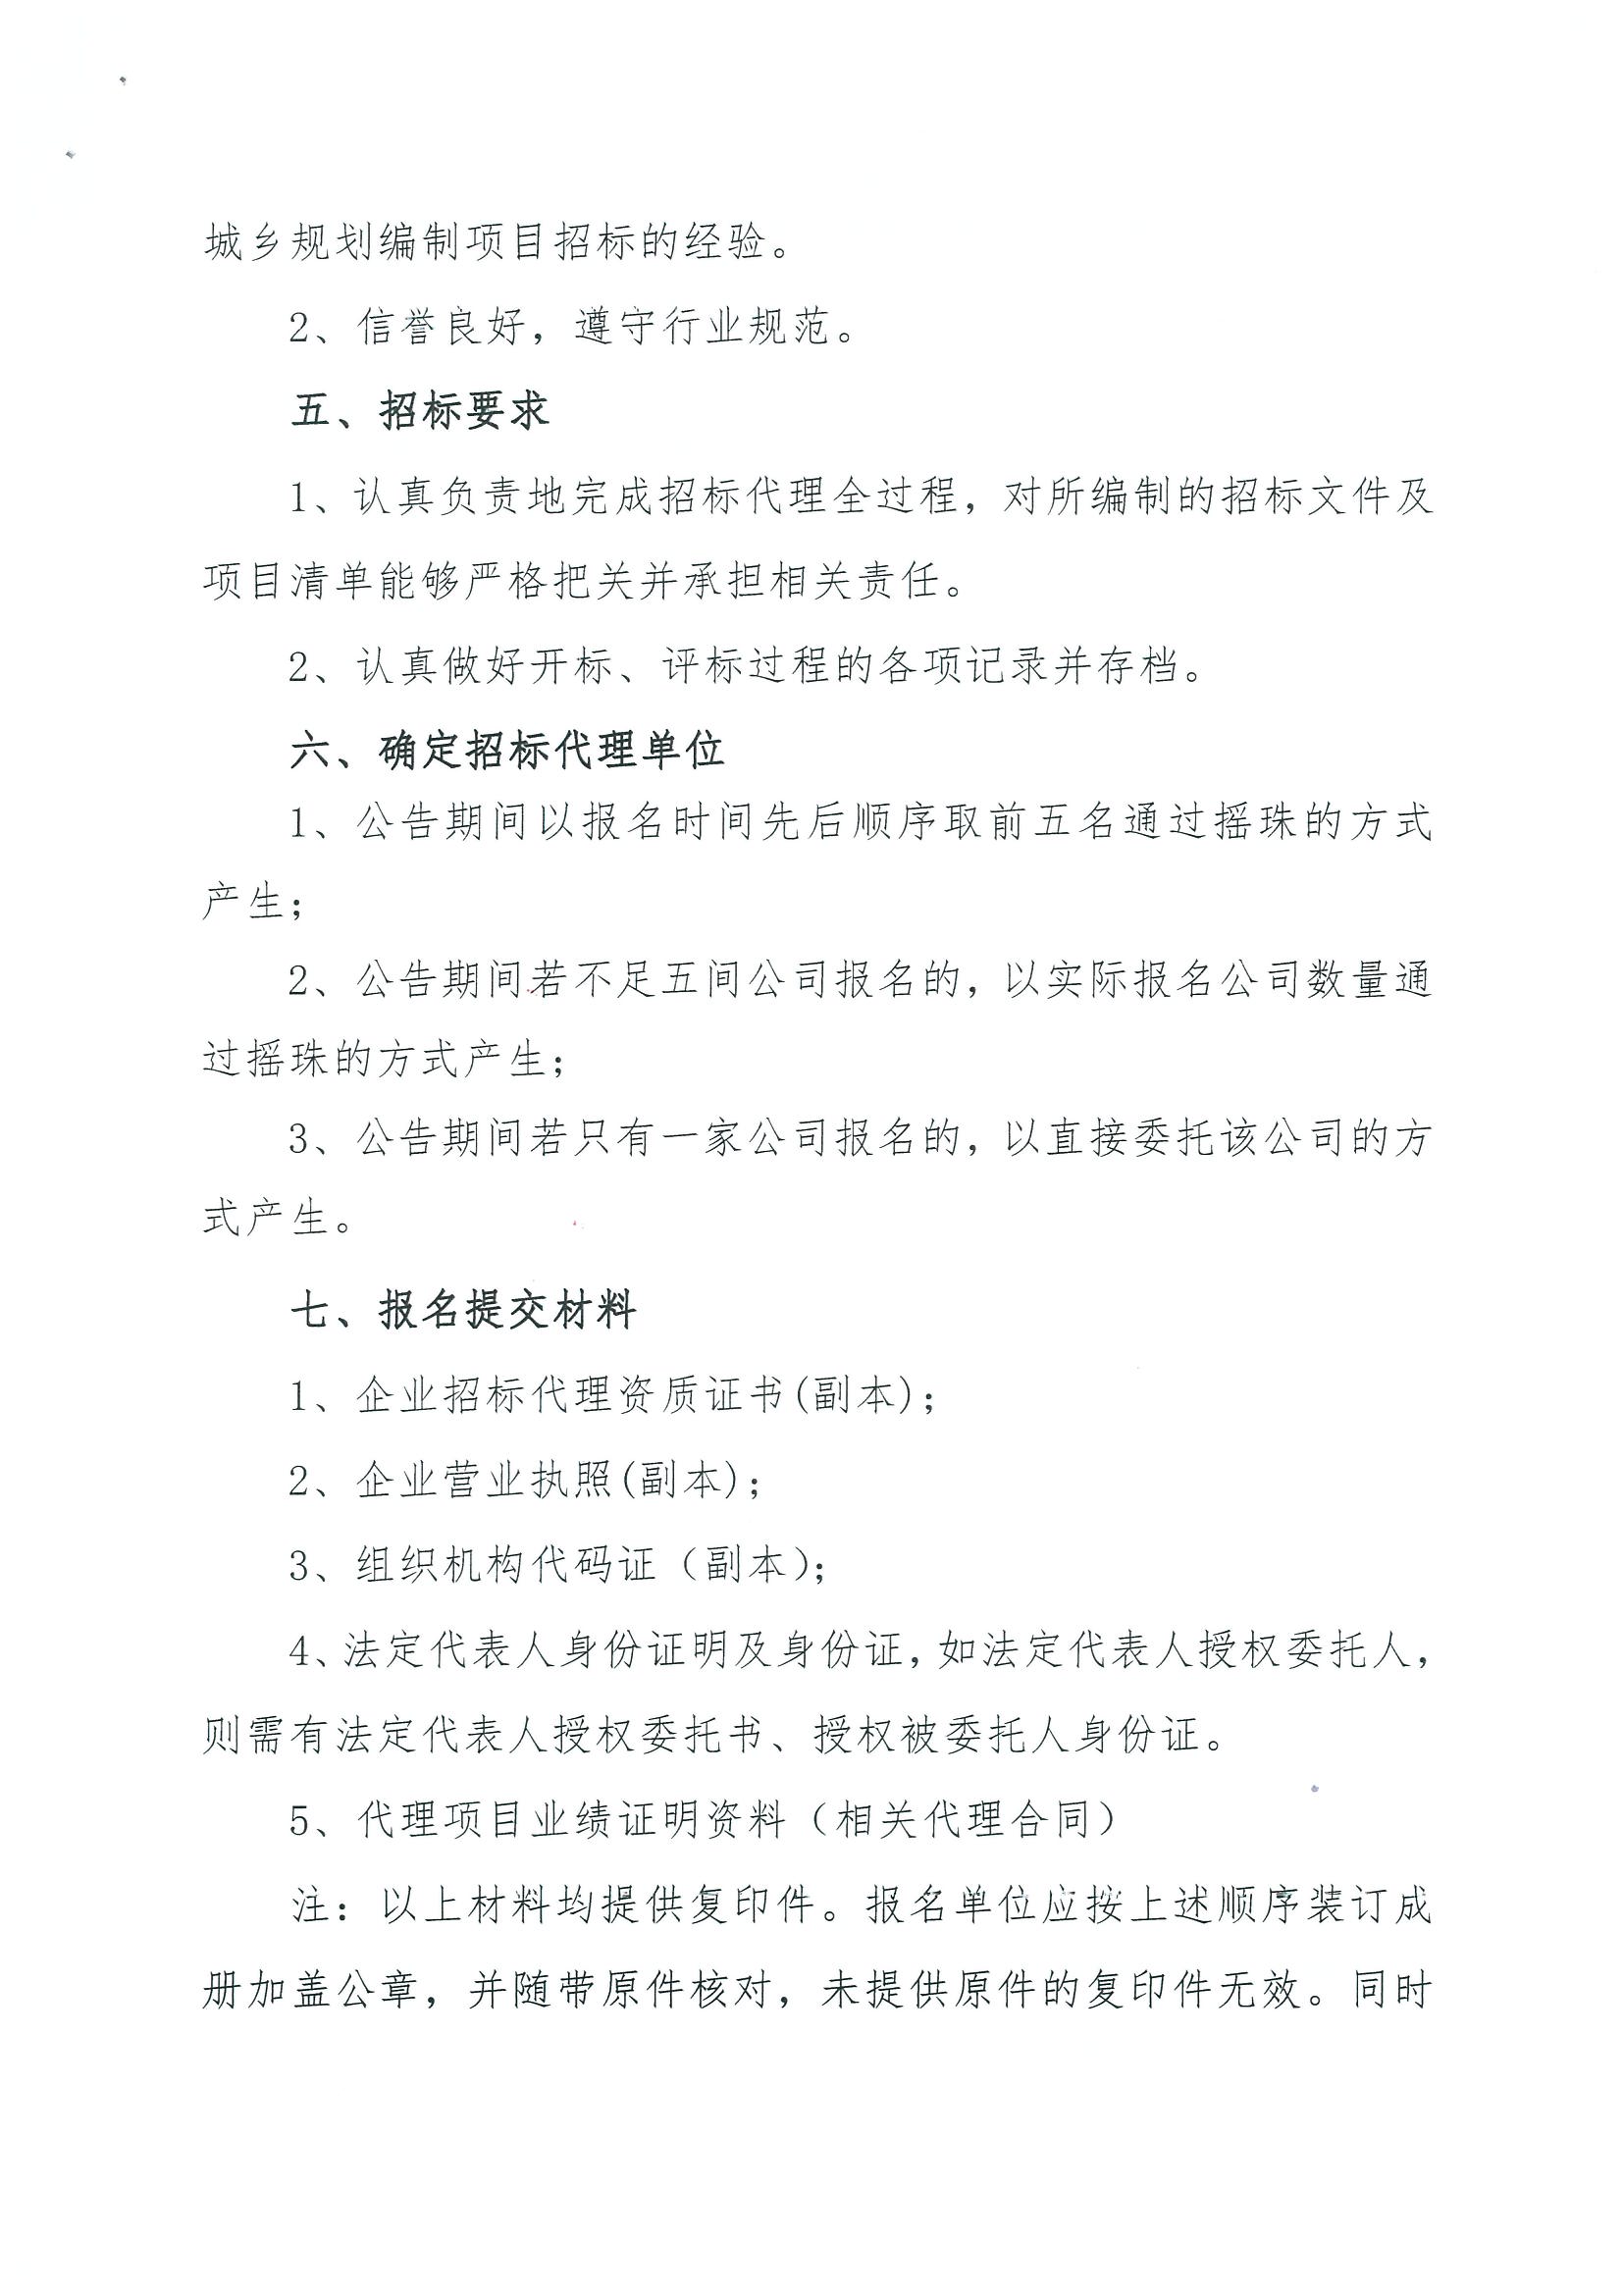 广州市规划和自然资源局花都区分局关于聘请招标代理的公告_页面_2.jpg